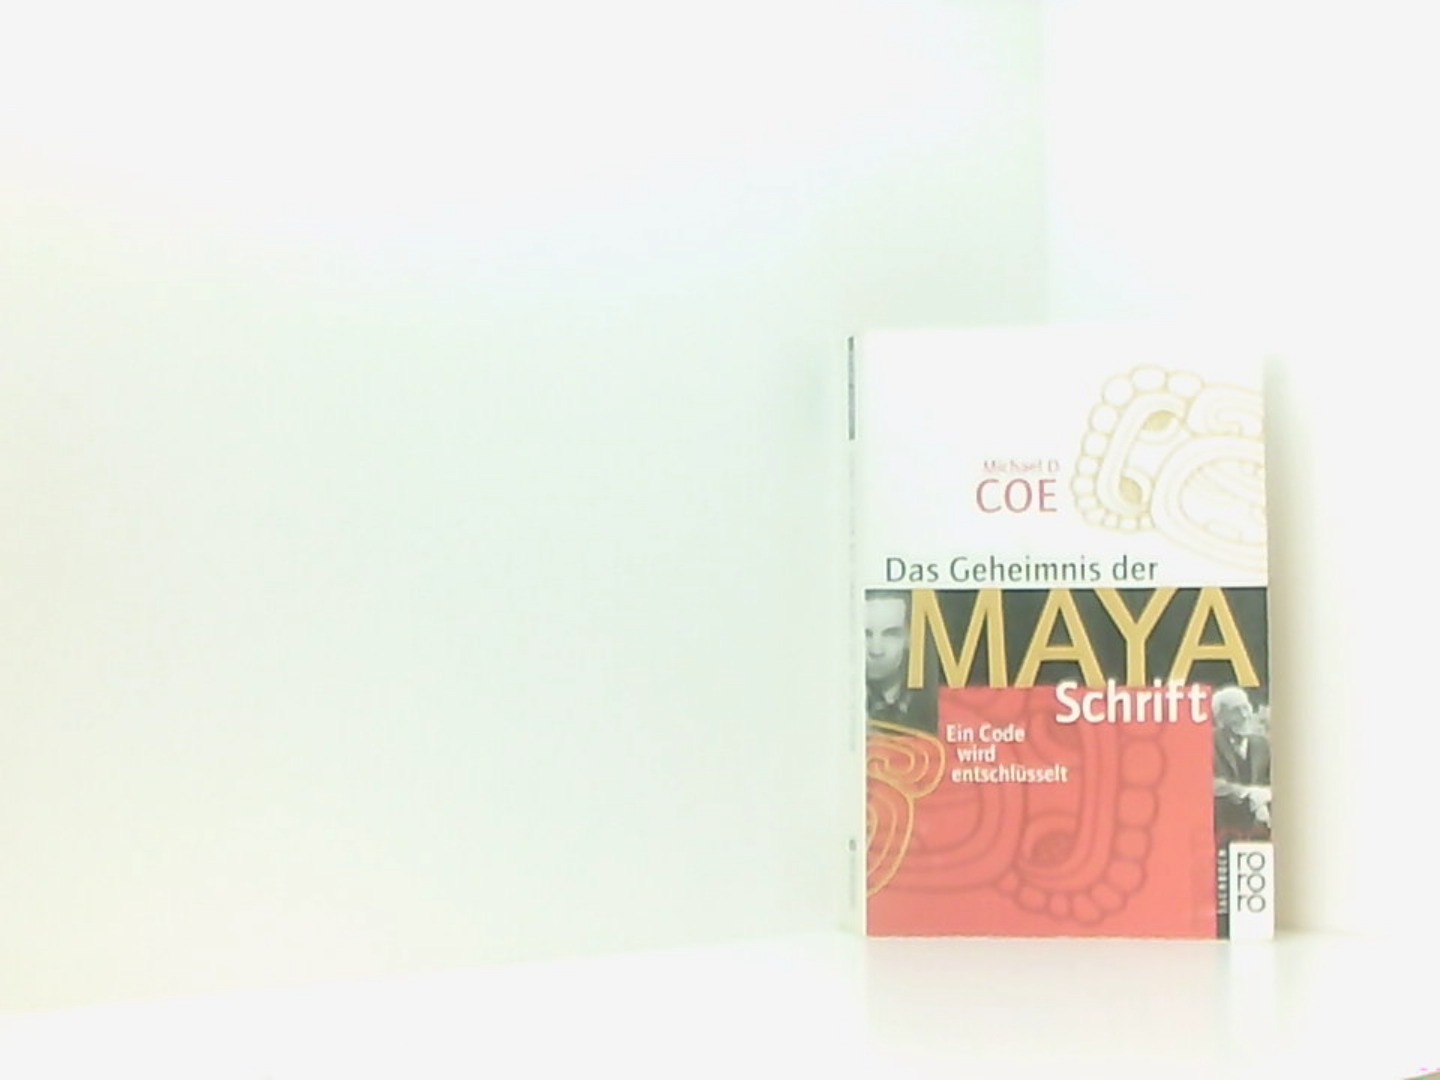 Das Geheimnis der Maya-Schrift. Ein Code wird entschlüsselt. - Coe Michael, D. und J. Riese Frauke